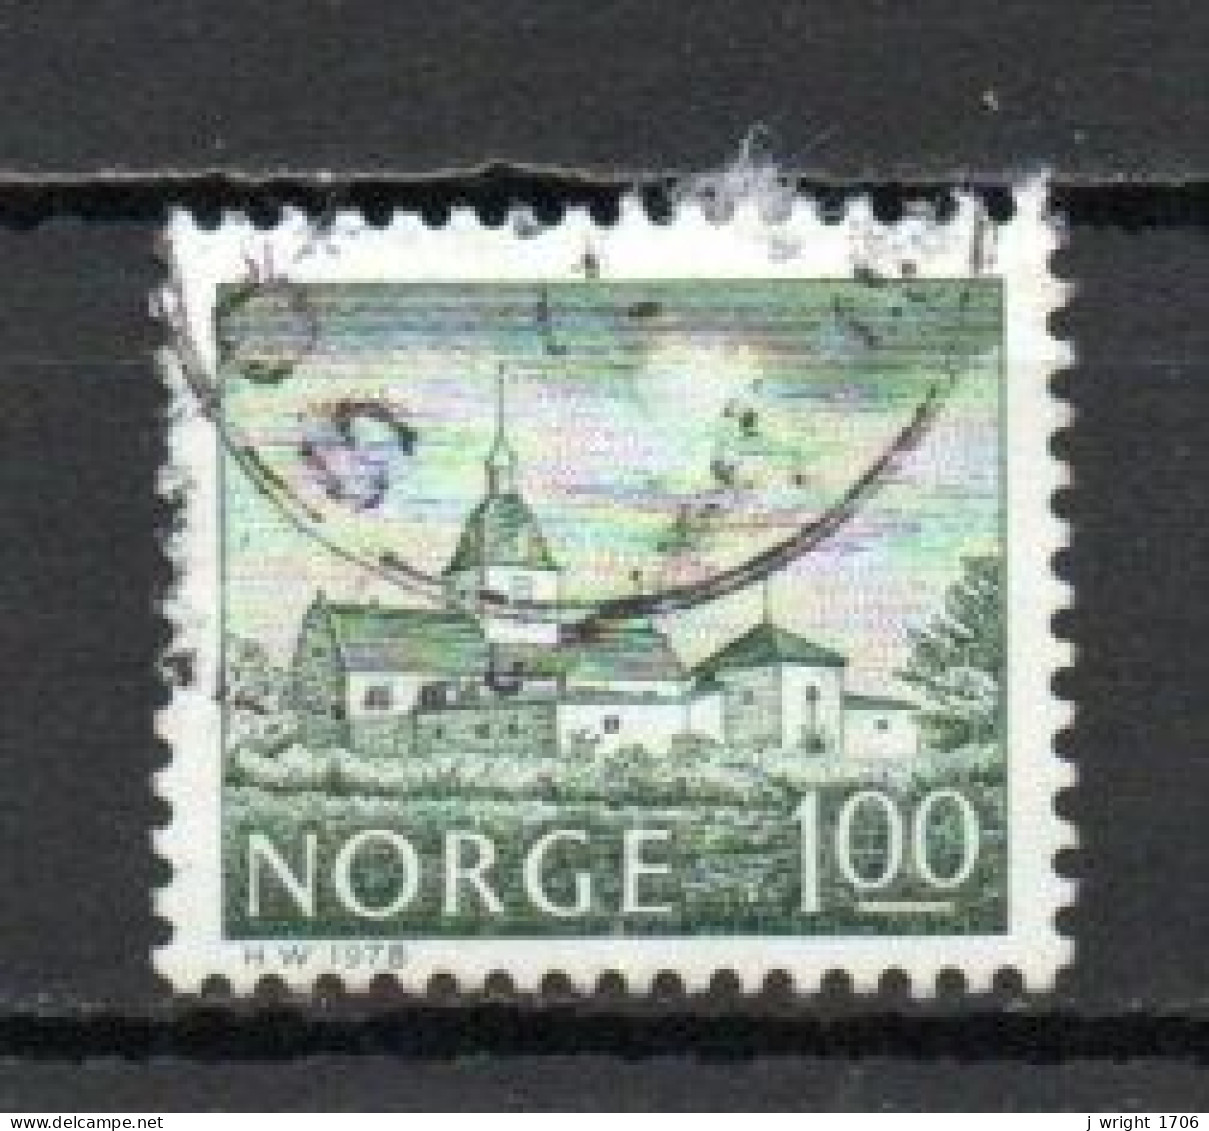 Norway, 1978, Buildings/Austråt Manor, 1Kr, USED - Gebruikt